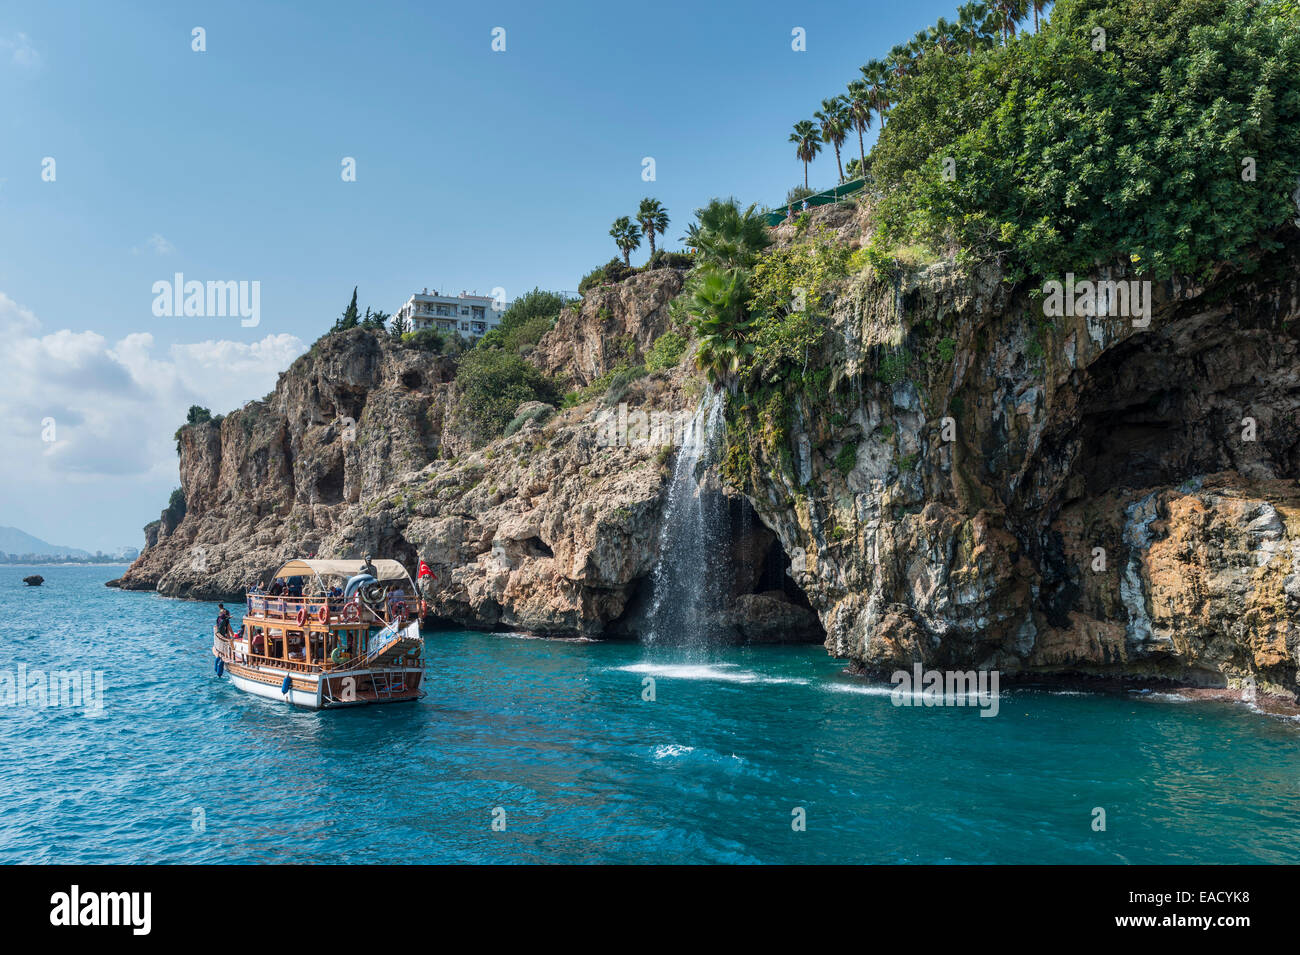 Ausflugsboot in den Golf von Antalya, Klippen mit Wasserfall, Yavuz Özcan Park an der Spitze der türkischen Adria, Antalya, Türkei Stockfoto